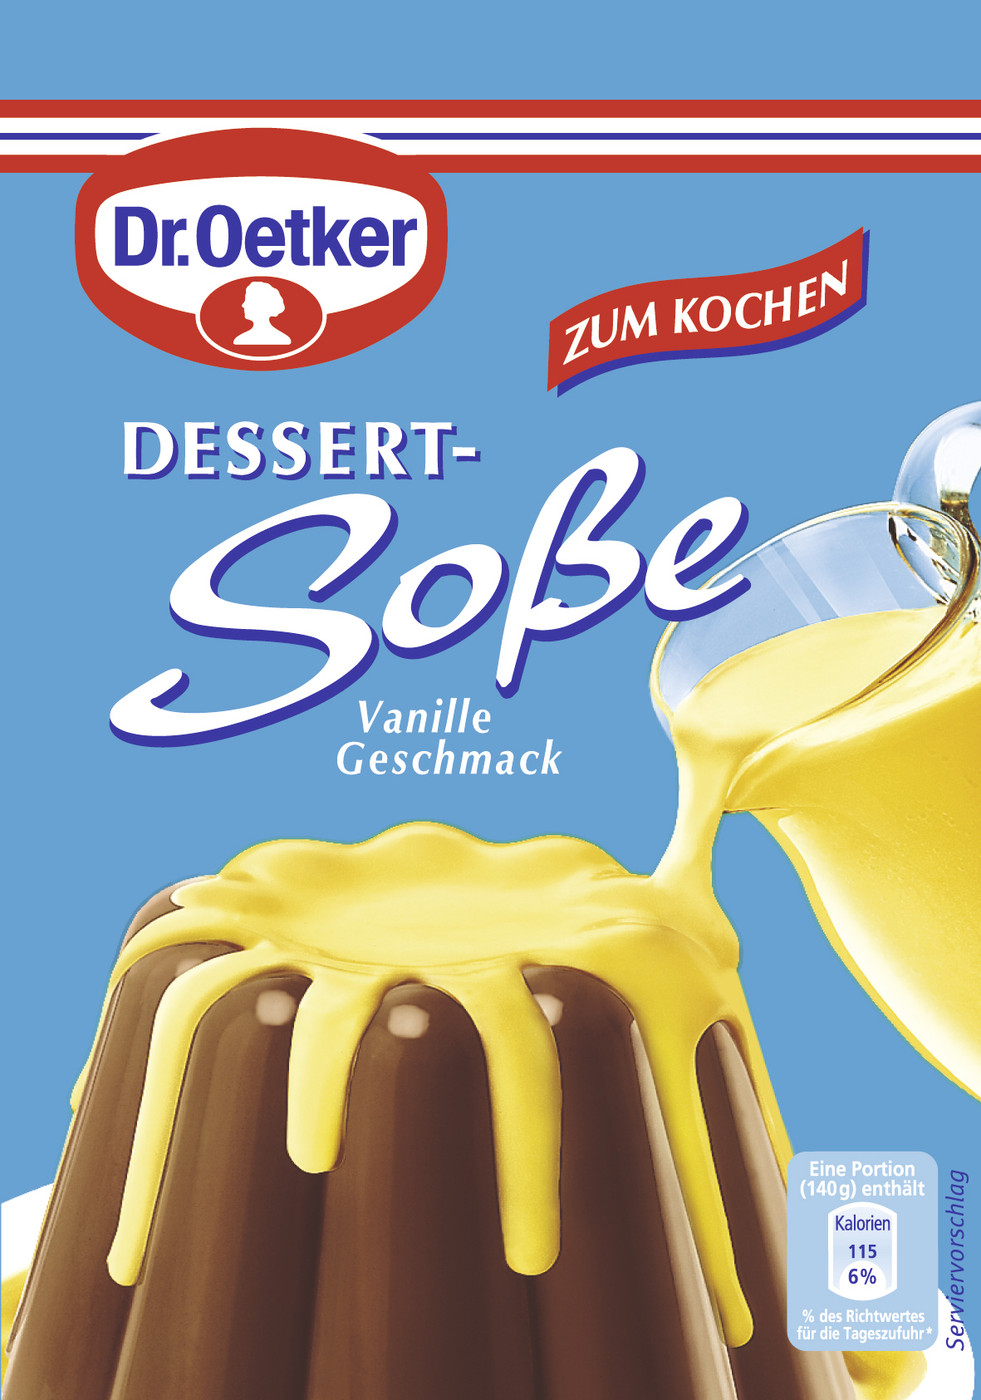 Dr.Oetker Dessert Soße mit Vanille-Geschmack zum Kochen 3ST 51G